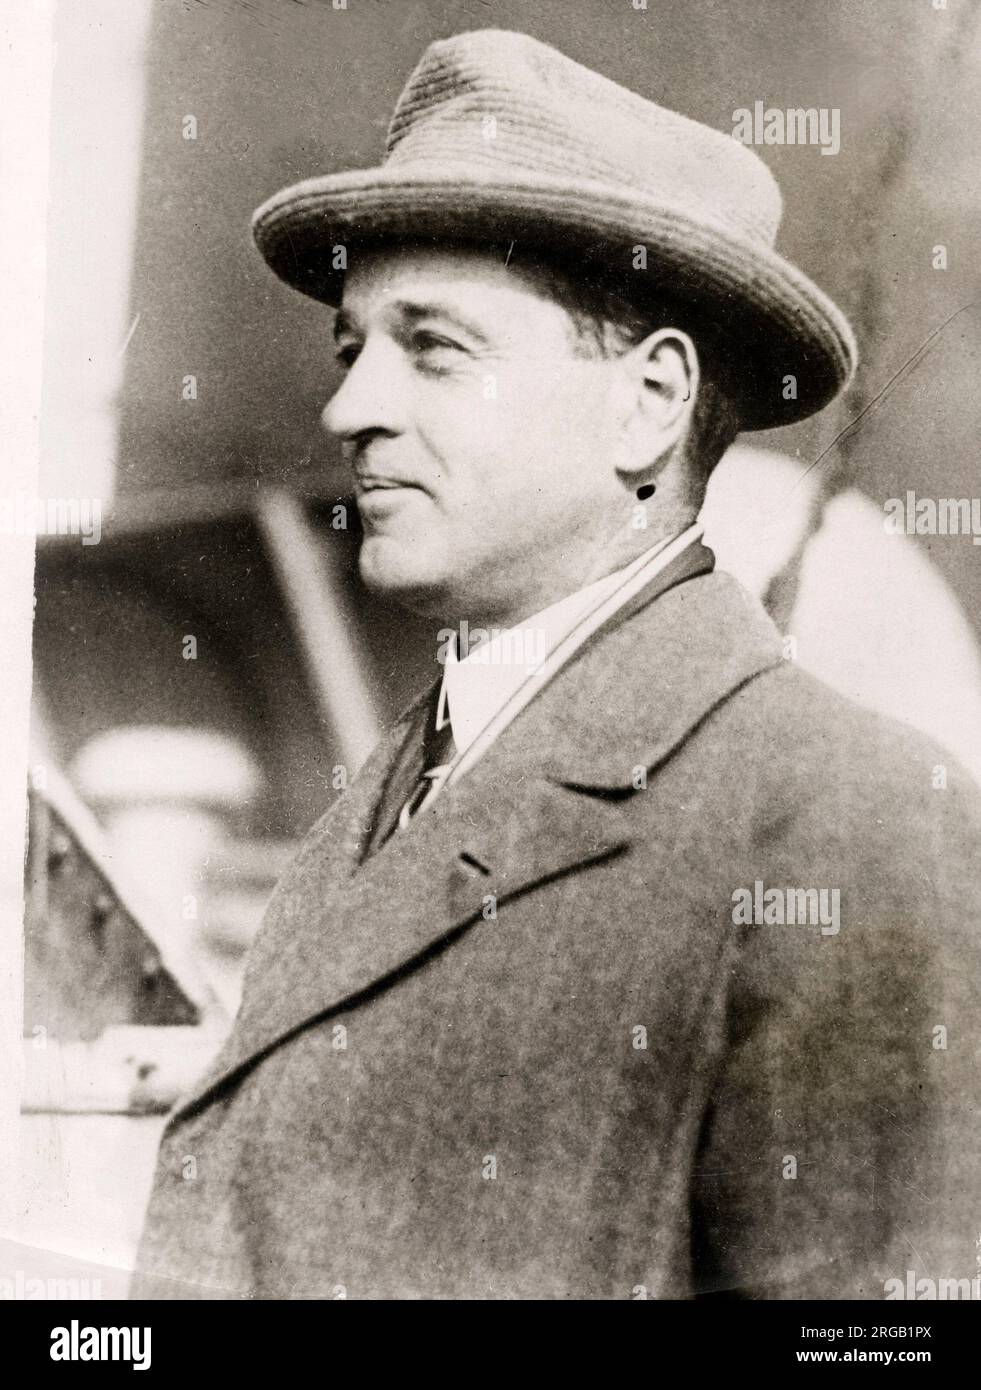 William Kissam Vanderbilt II (26 octobre 1878 - 8 janvier 1944) était un passionné de course automobile et un plaisancier, et un membre de la famille américaine Vanderbilt Banque D'Images